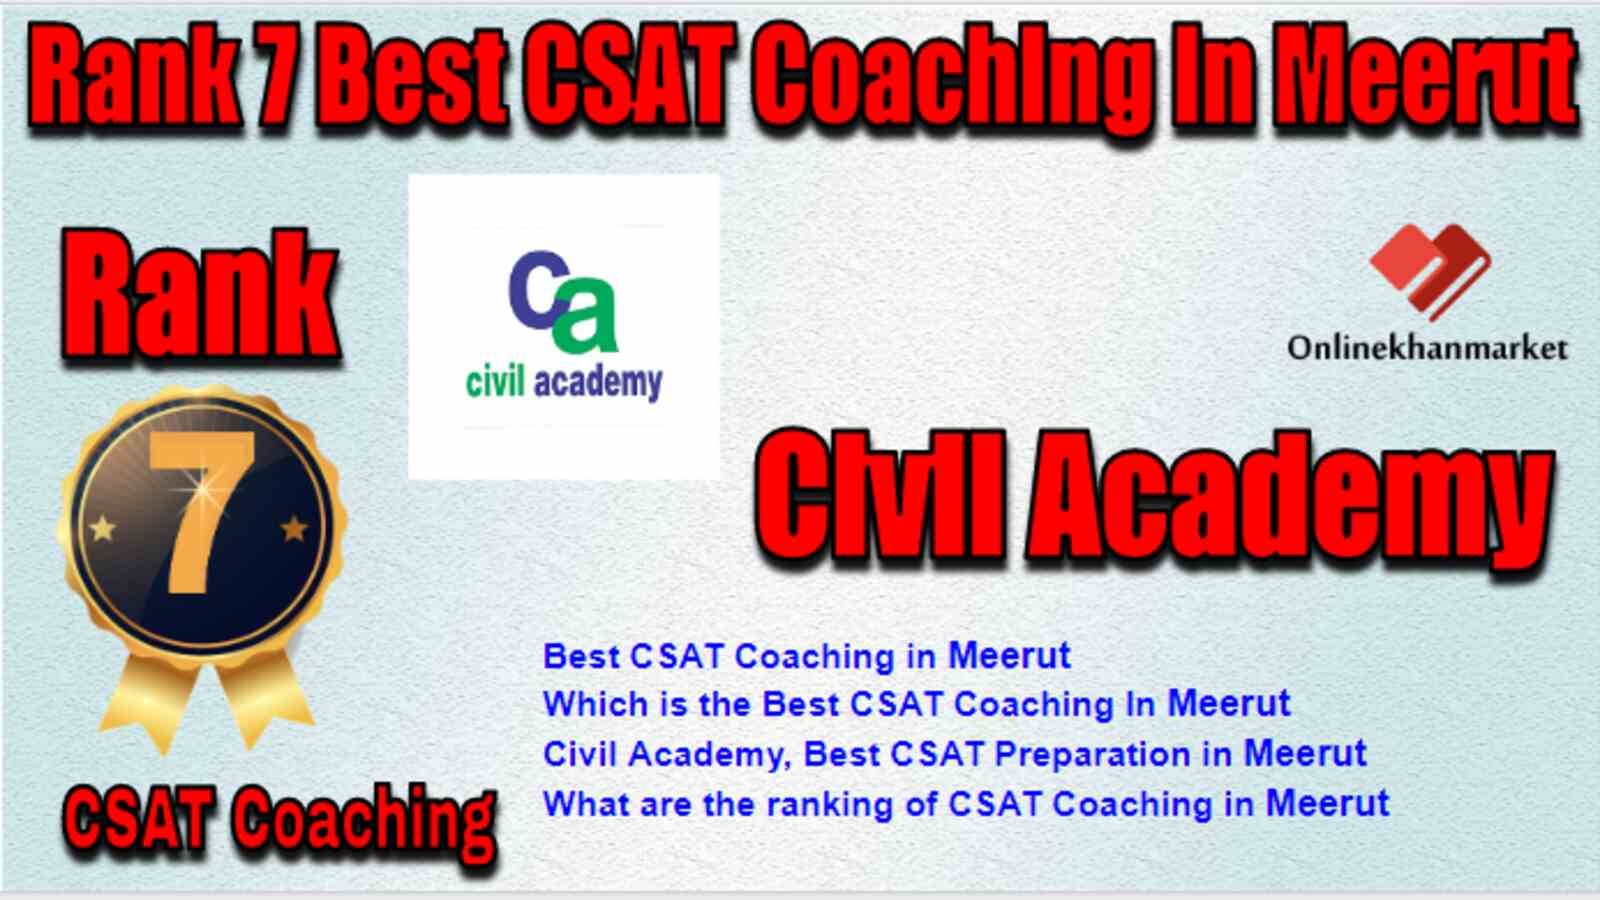 Rank 7 Best CSAT Coaching in Meerut